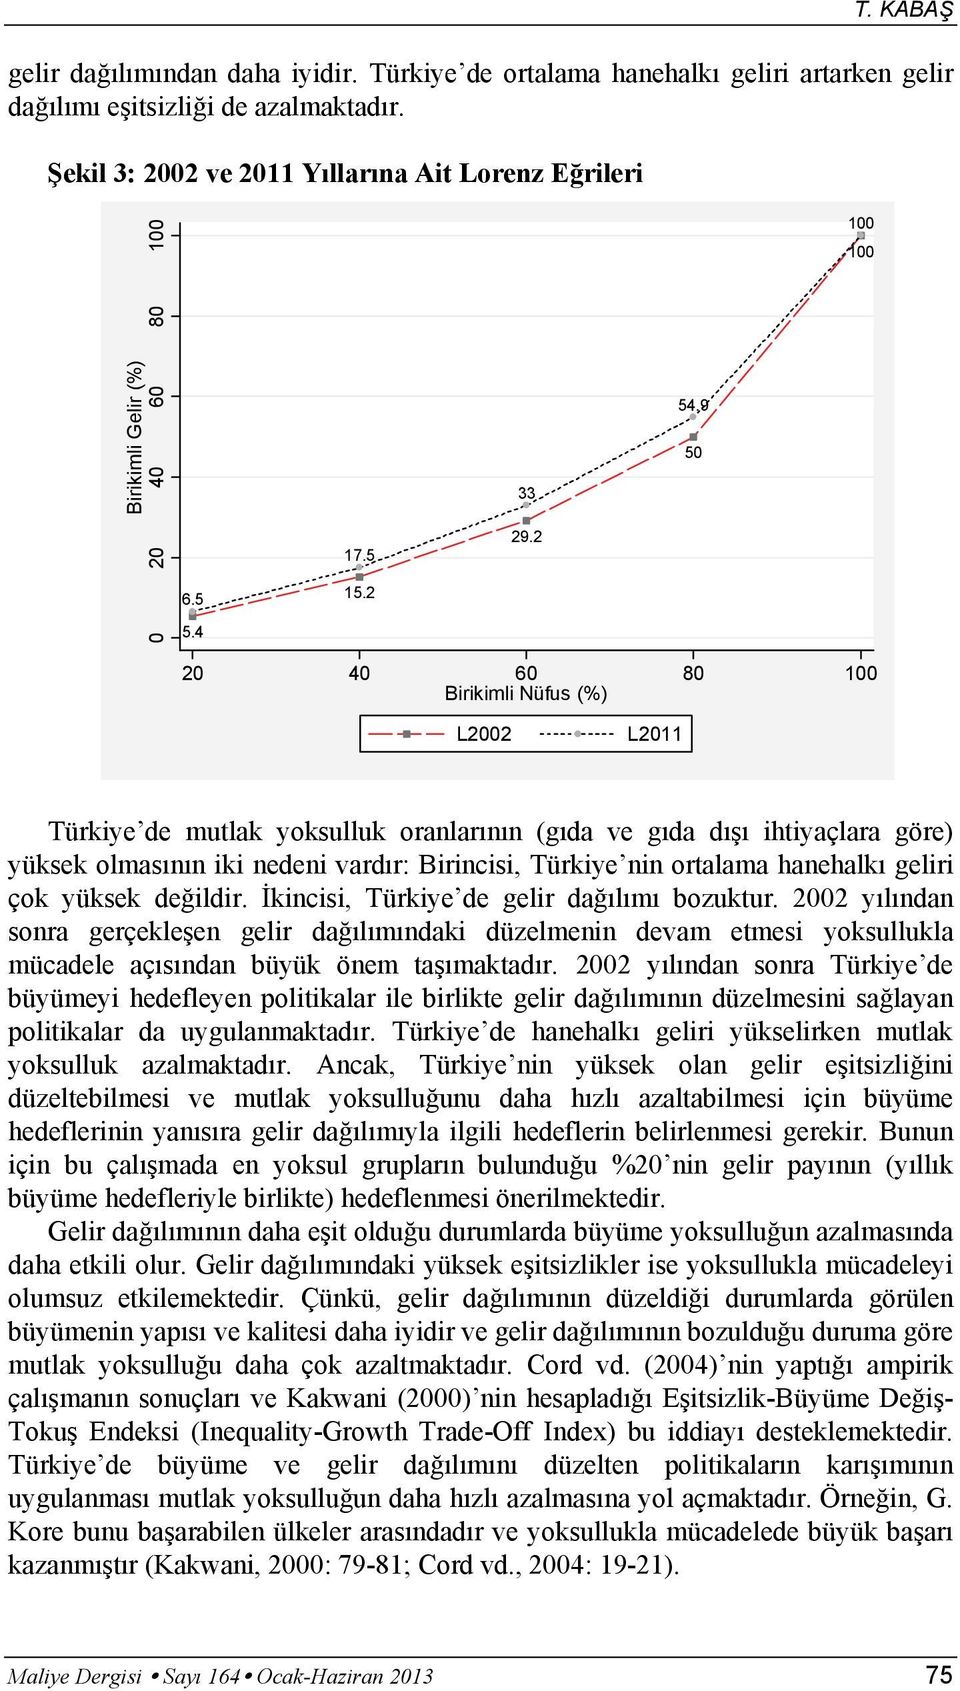 9 50 100 100 20 40 60 80 100 Birikimli Nüfus (%) L2002 L2011 Türkiye de mutlak yoksulluk oranlarının (gıda ve gıda dışı ihtiyaçlara göre) yüksek olmasının iki nedeni vardır: Birincisi, Türkiye nin